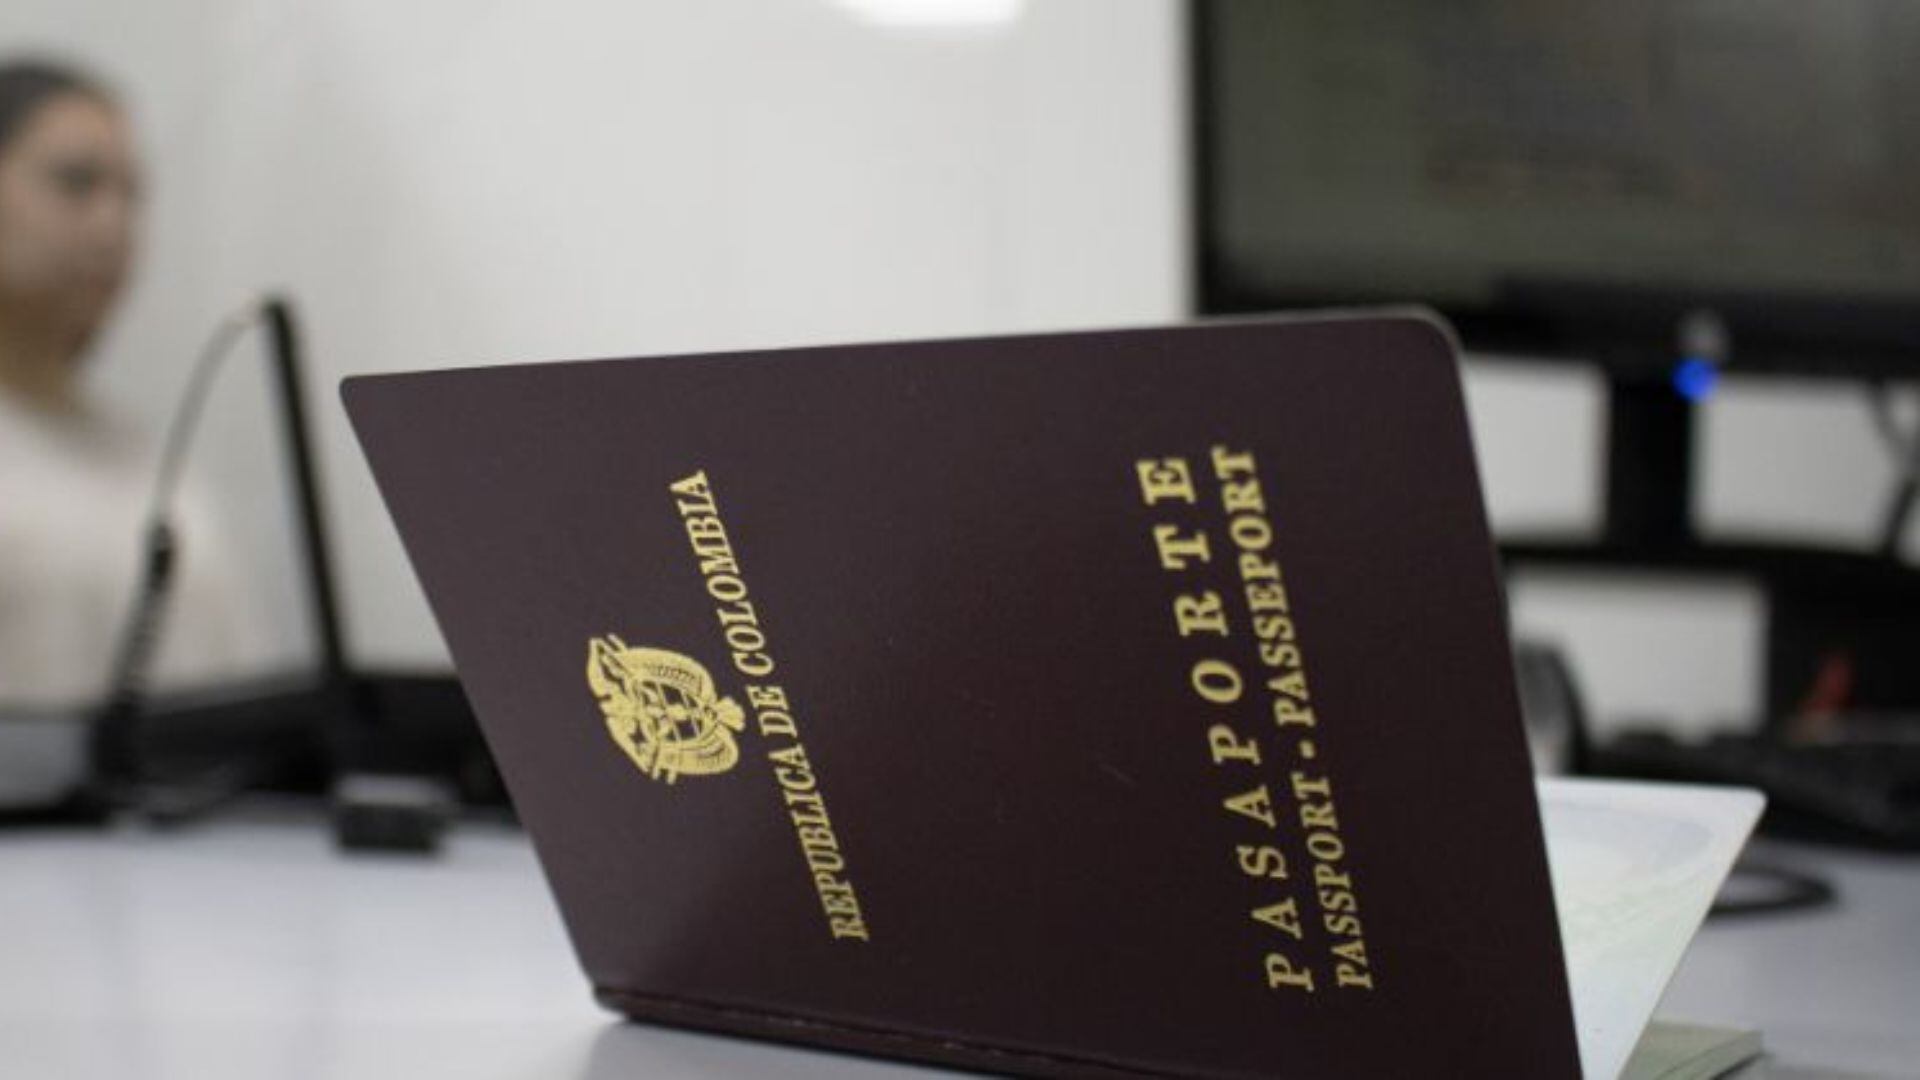 Familias colombianas se encuentran varadas debido a retrasos en la emisión de certificados judiciales tras cambios en política ecuatoriana - crédito Cancillería de Colombia